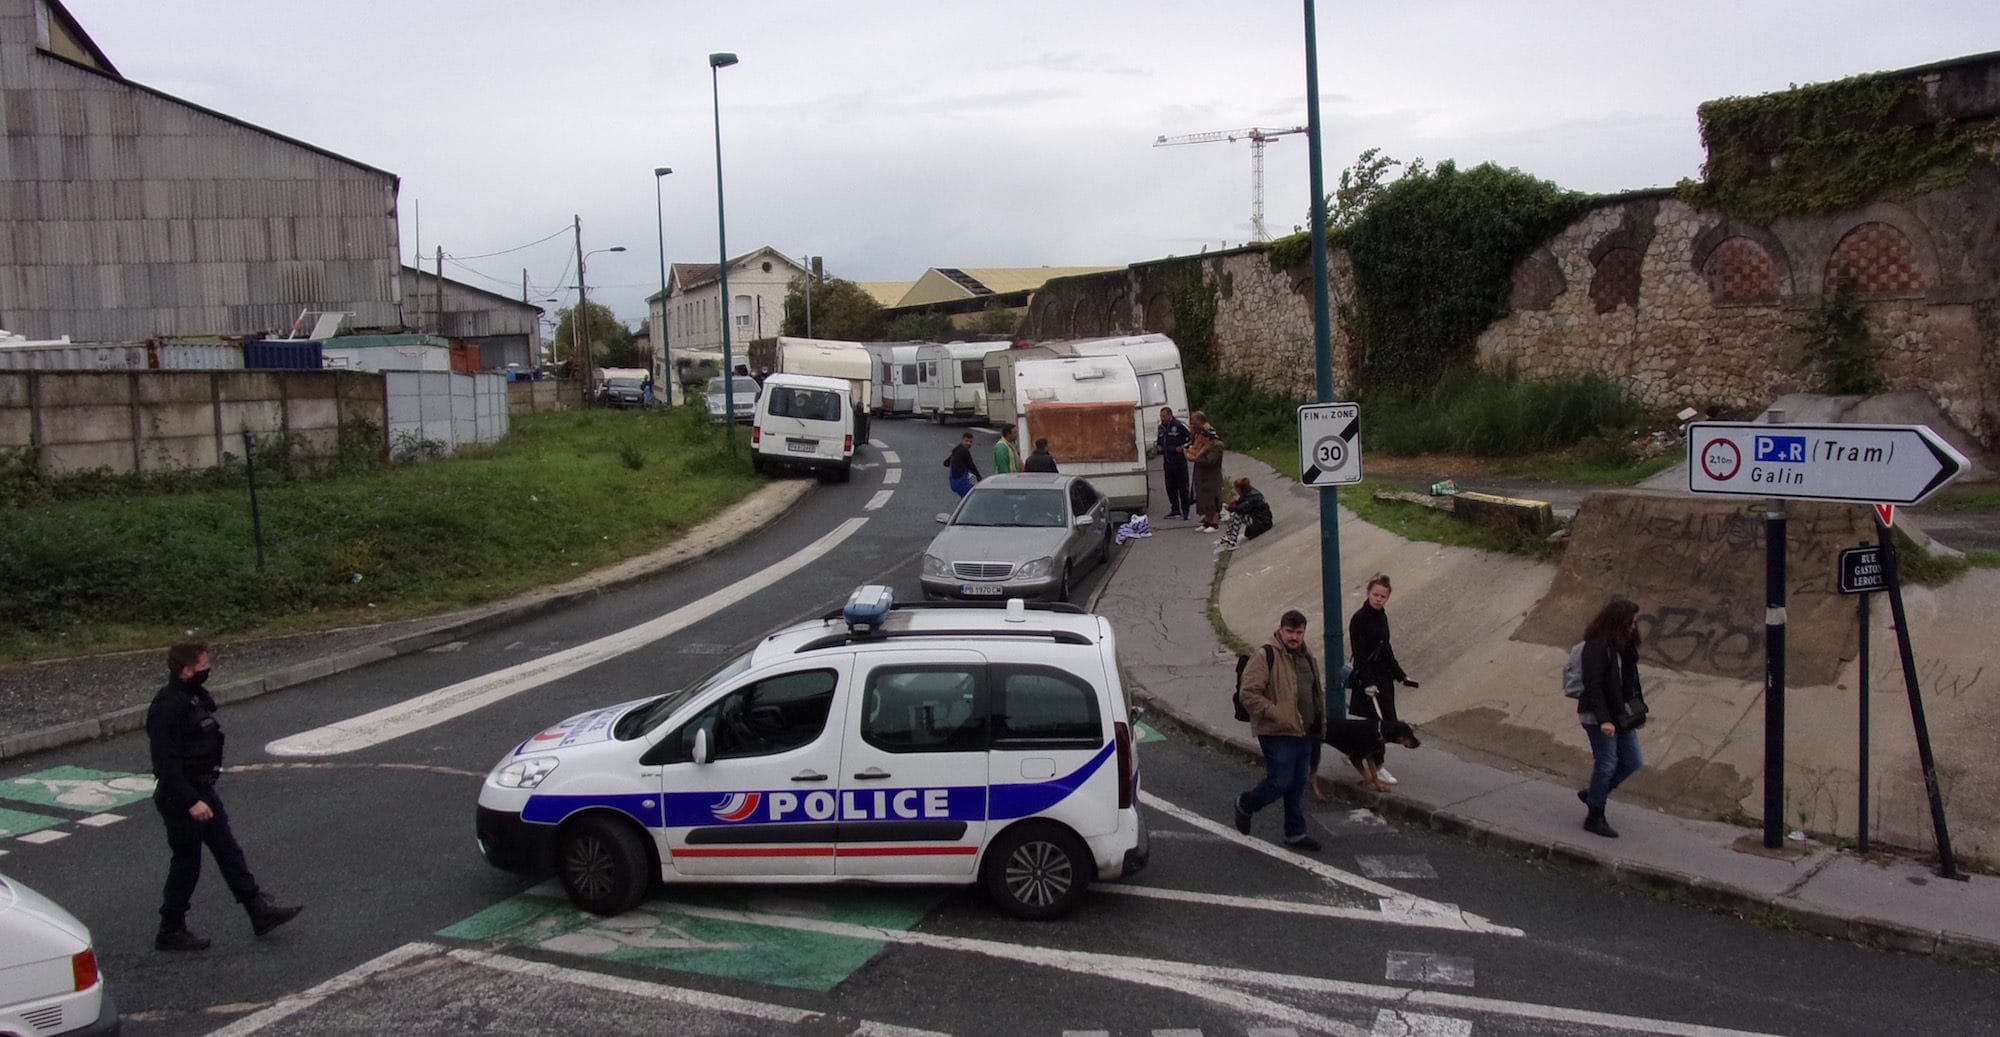 Le bidonville de la rue Lajaunie expulsé, des centaines de personnes à la rue à Bordeaux